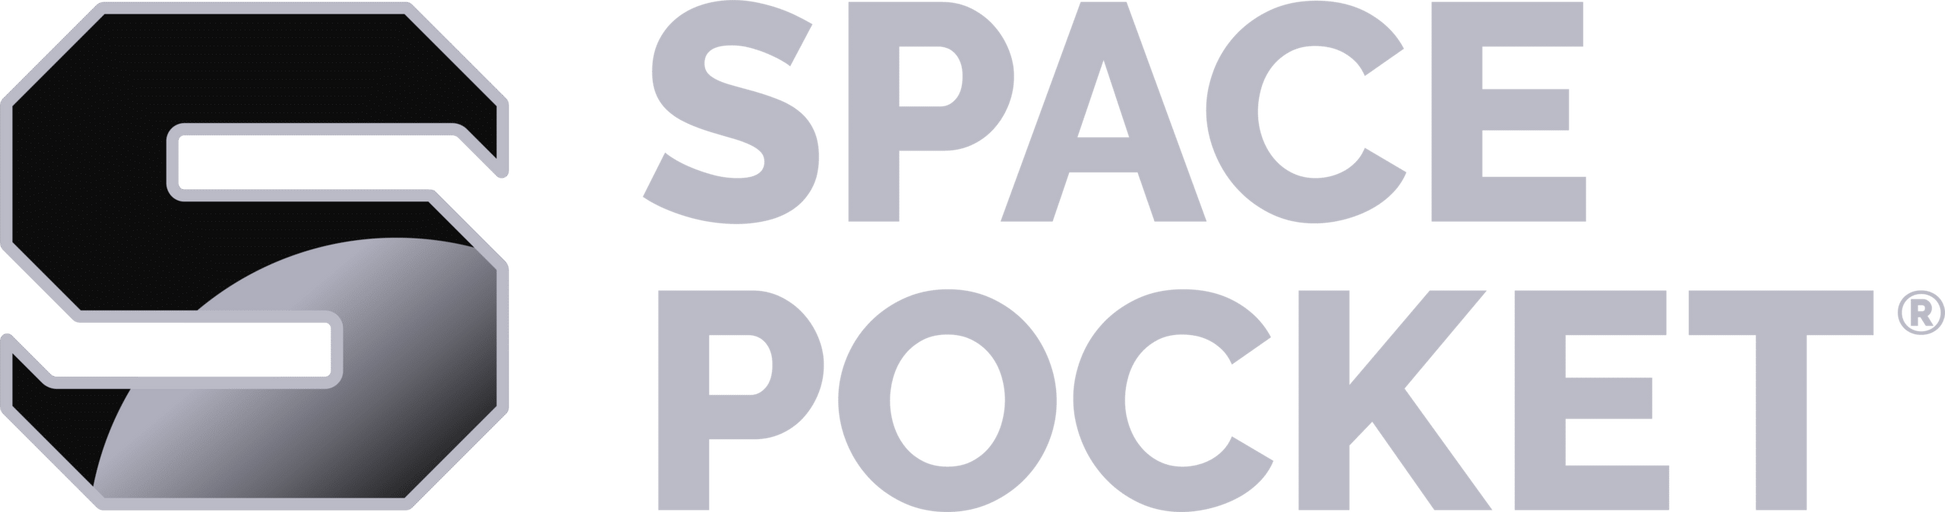 Space Pocket (Avaru Space)